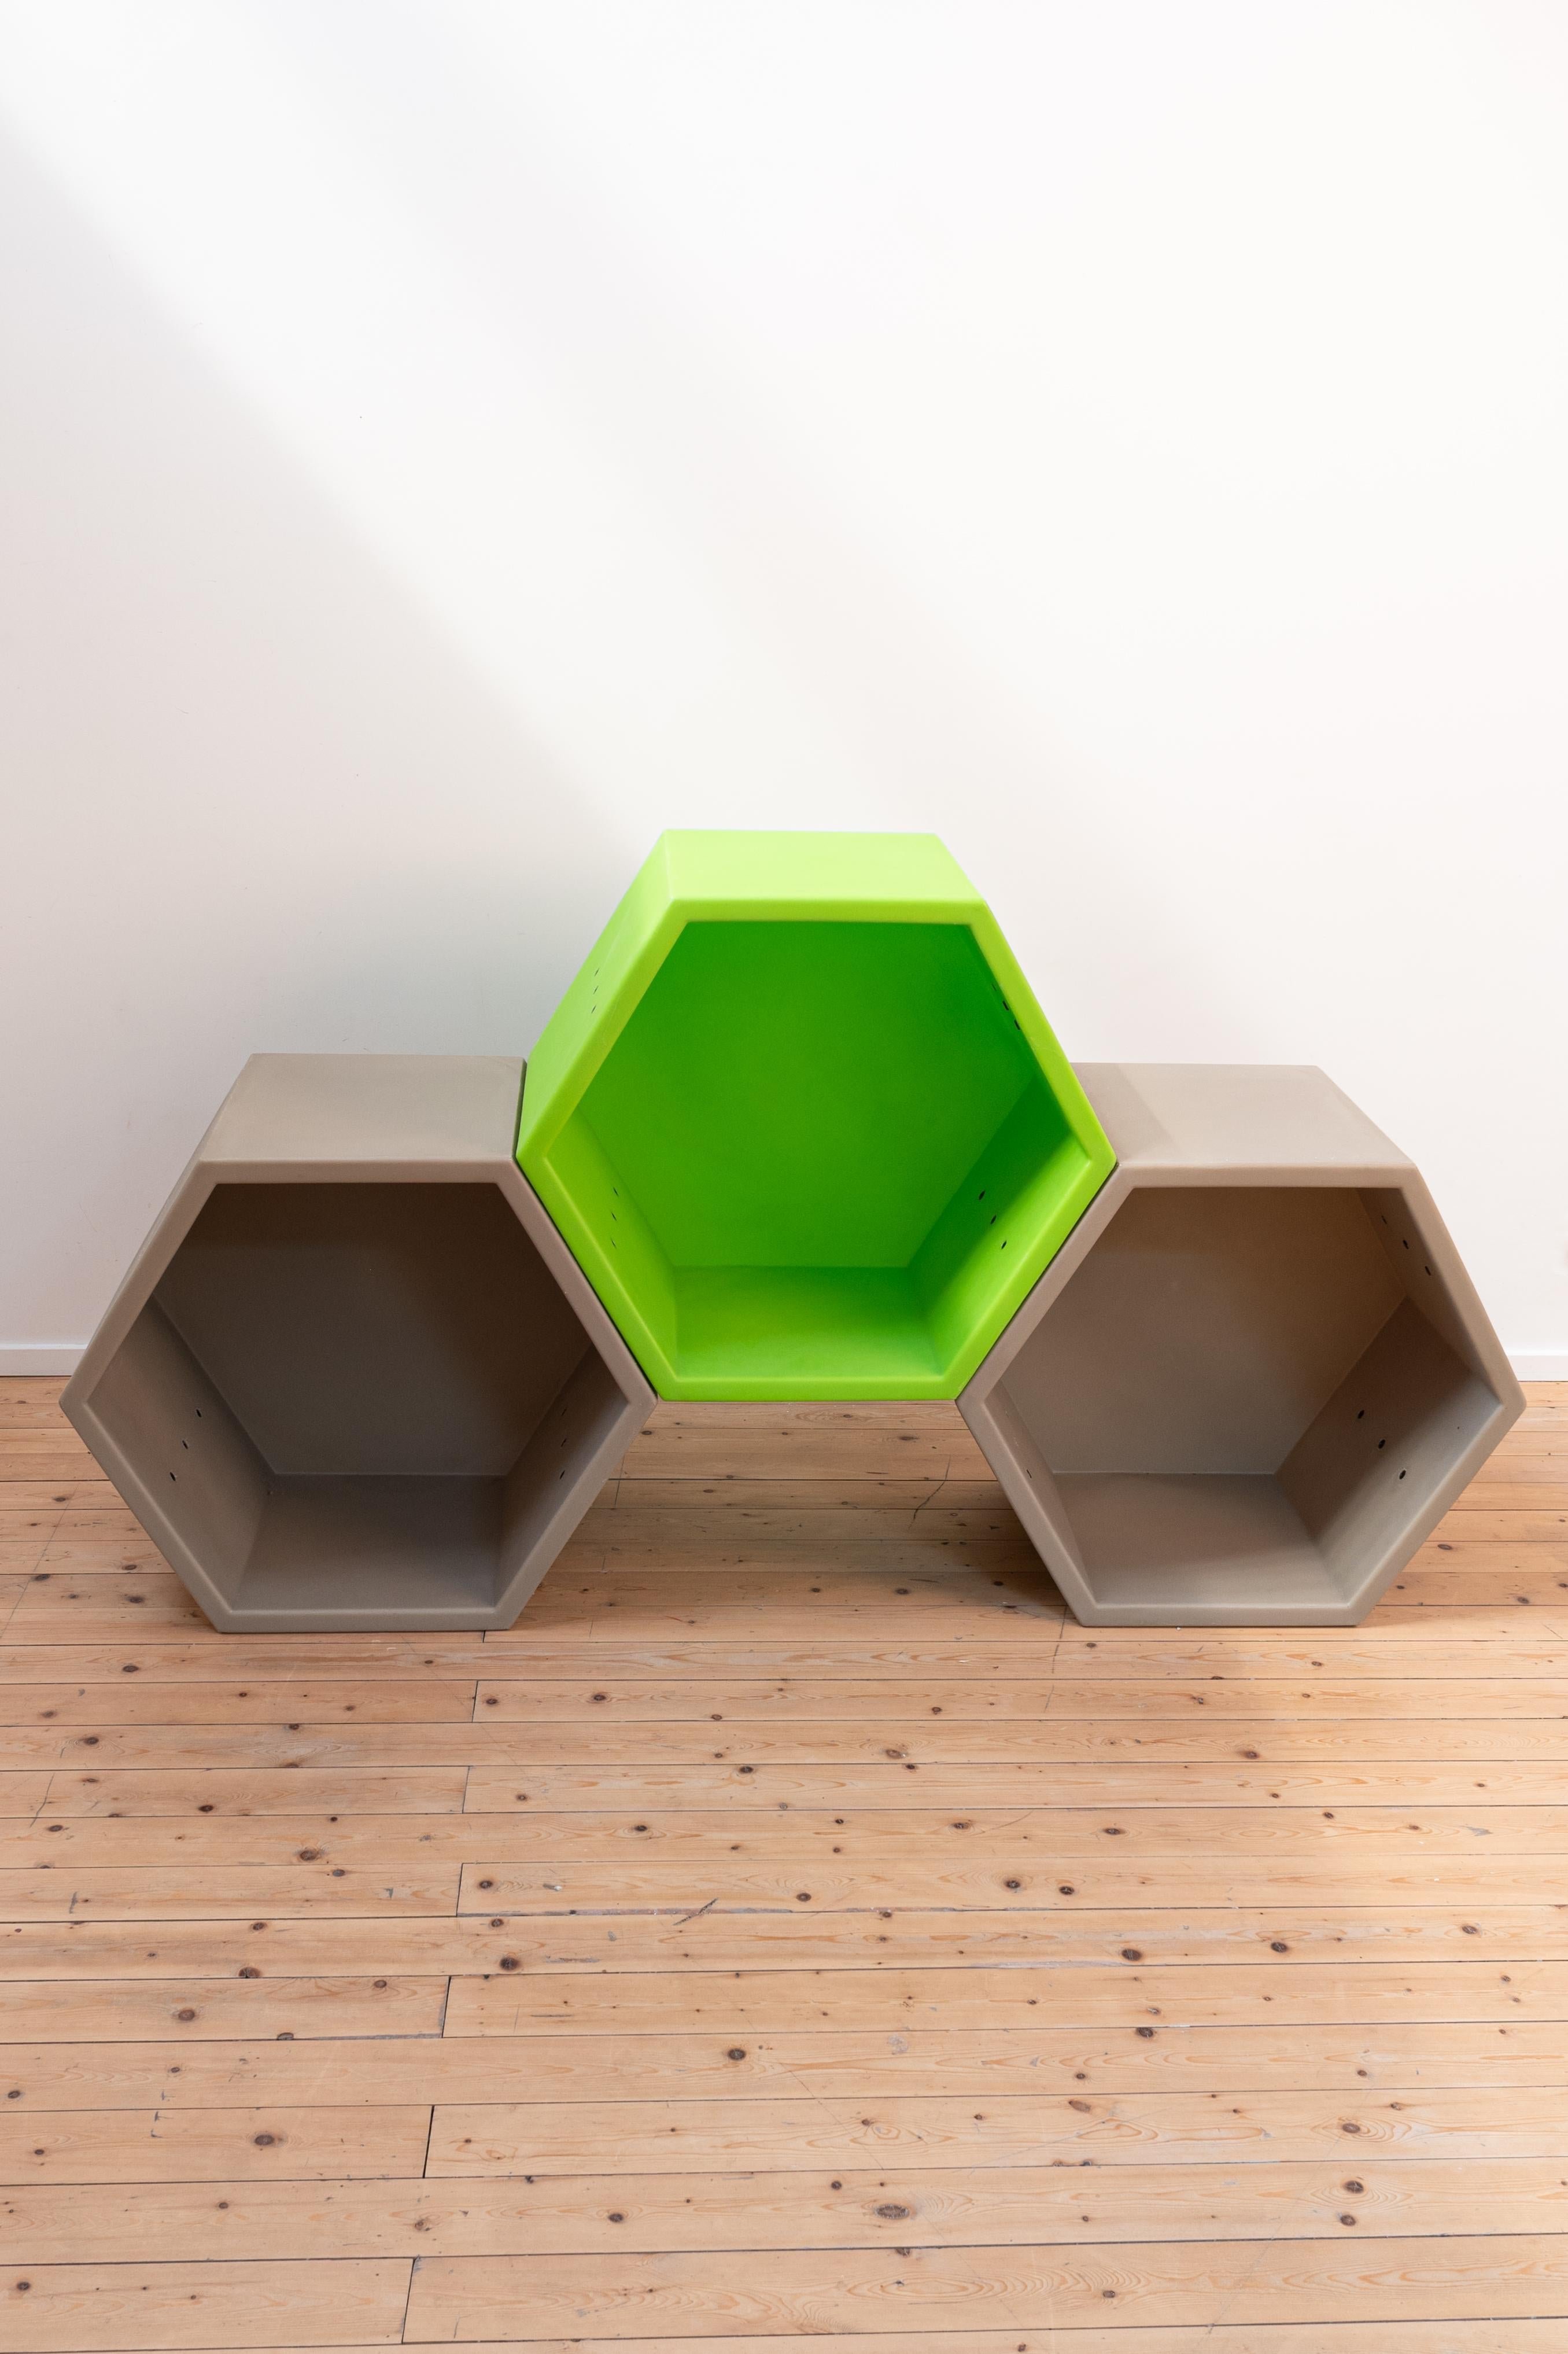 Honigwabe von Quinze & Milan und Designer: Clive Wilkinson

Das Set besteht aus 1 grünem Modul und 2 grauen Modulen. Das schwarze Modul ist beschädigt und wird beim Kauf des Sets kostenlos hinzugefügt (wenn Sie es wünschen). 

